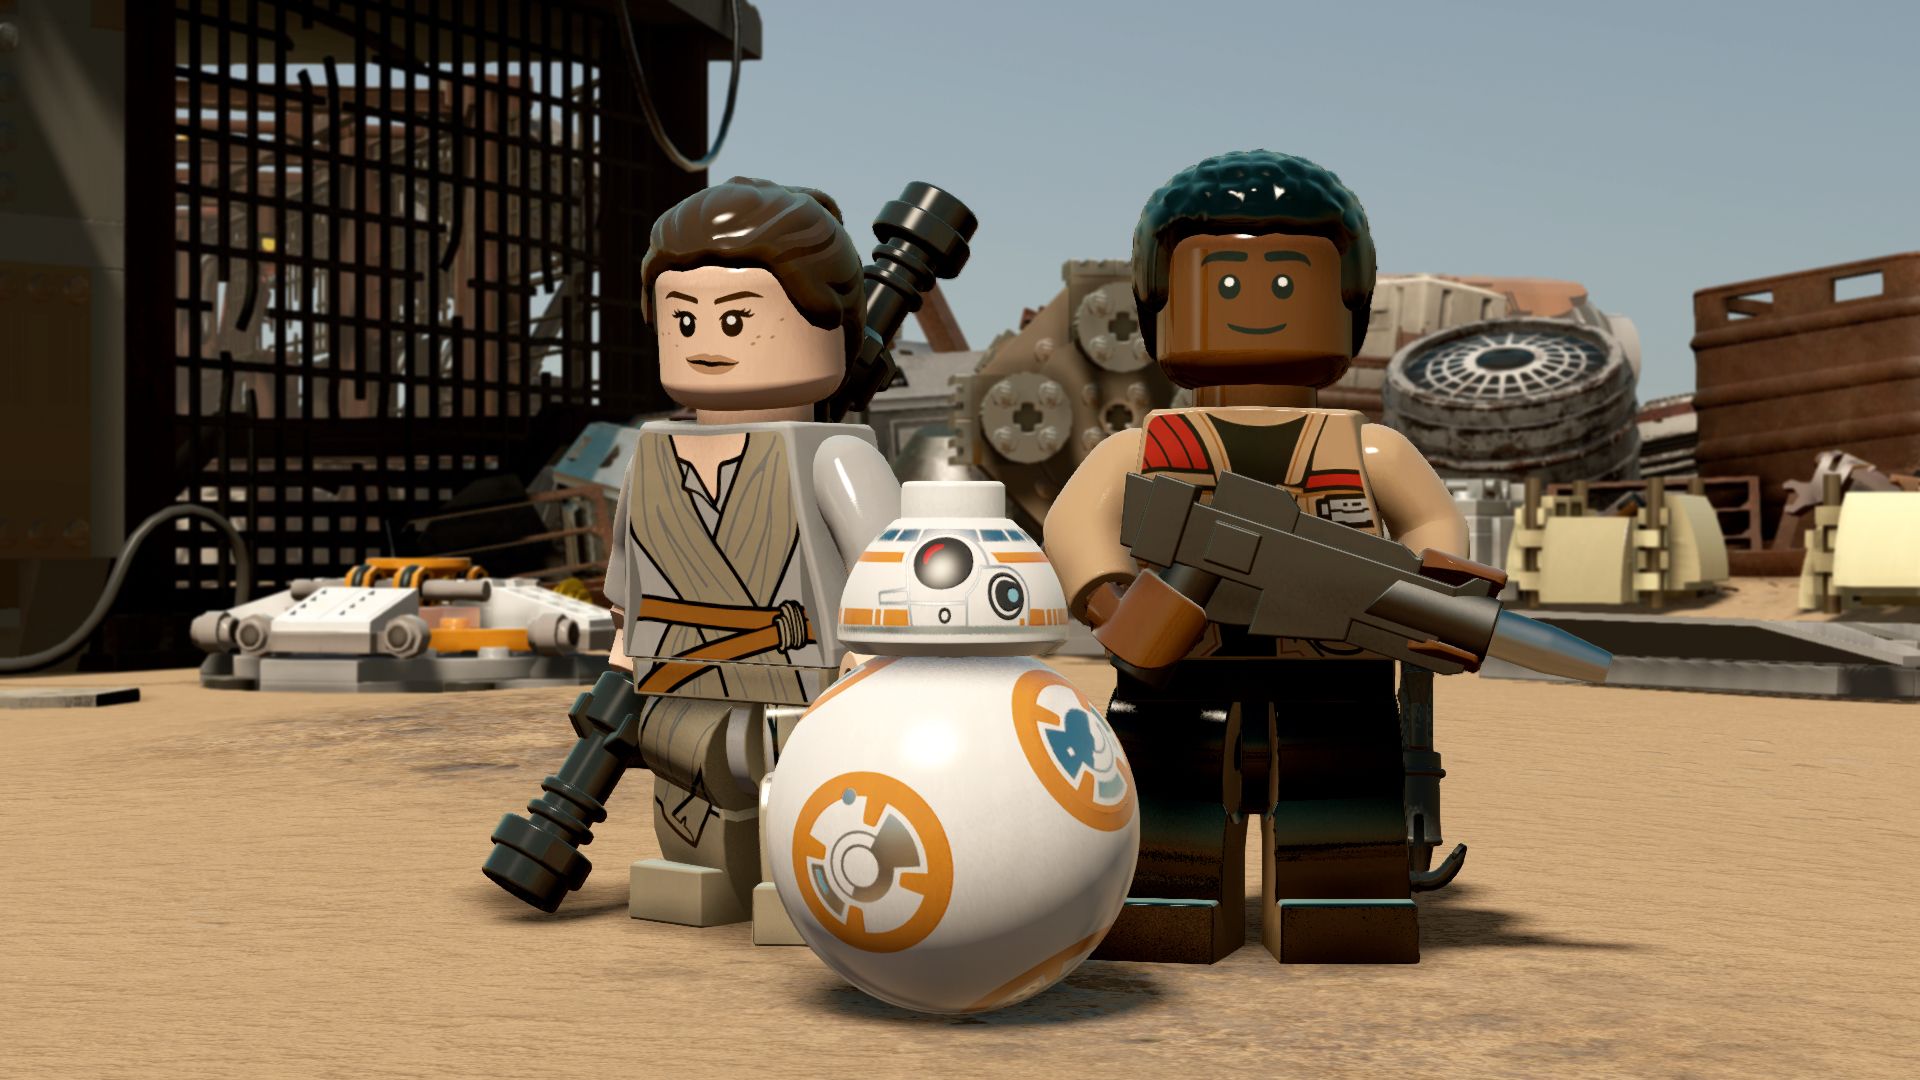 Descarga gratuita de fondo de pantalla para móvil de Lego, Videojuego, Finn (La Guerra De Las Galaxias), Rey (La Guerra De Las Galaxias), Bb 8, Lego Star Wars: El Despertar De La Fuerza.